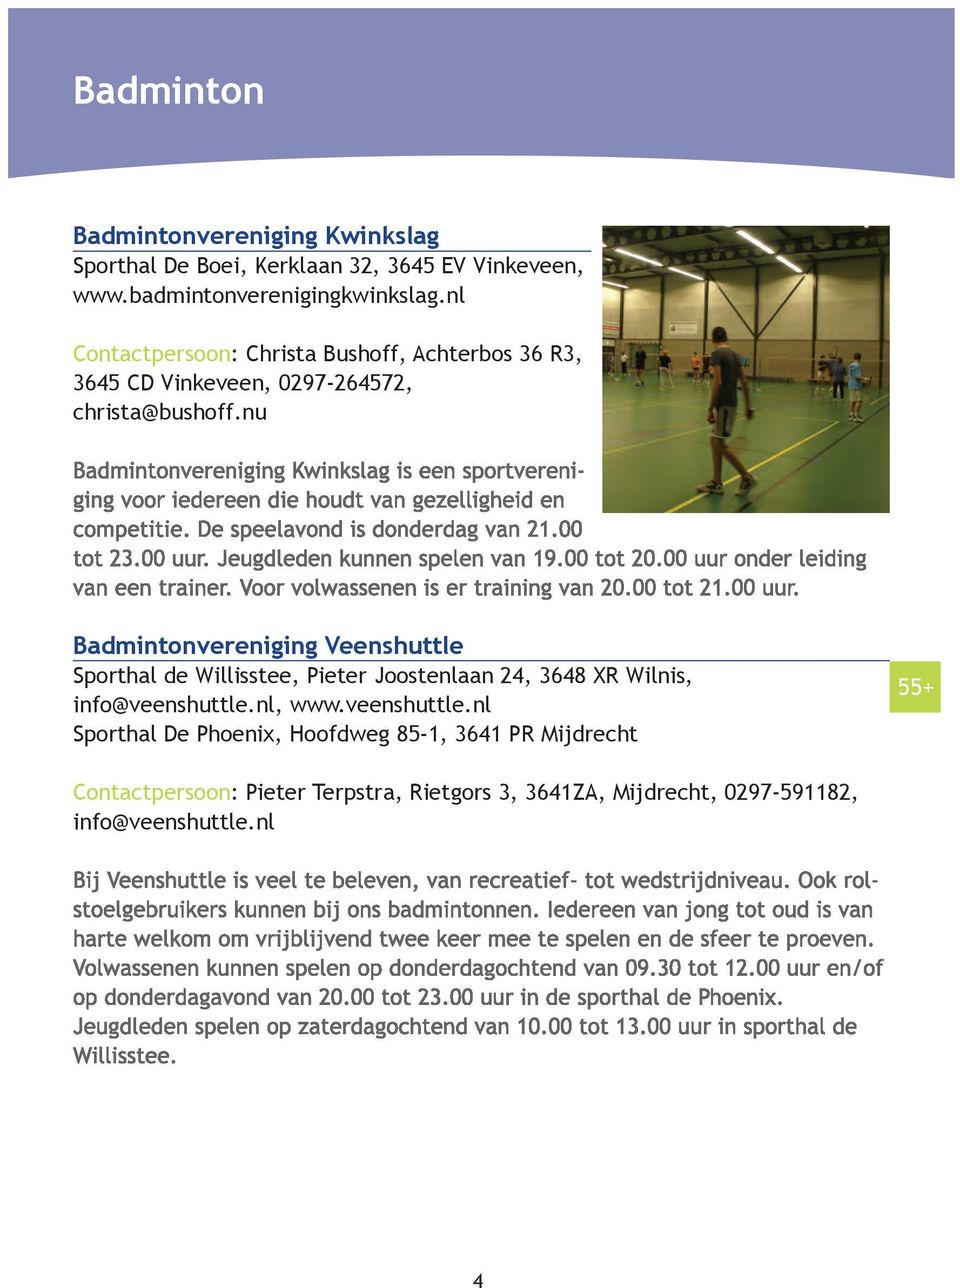 nu Badmintonvereniging Veenshuttle Sporthal de Willisstee, Pieter Joostenlaan 24, 3648 XR Wilnis, info@veenshuttle.nl, www.